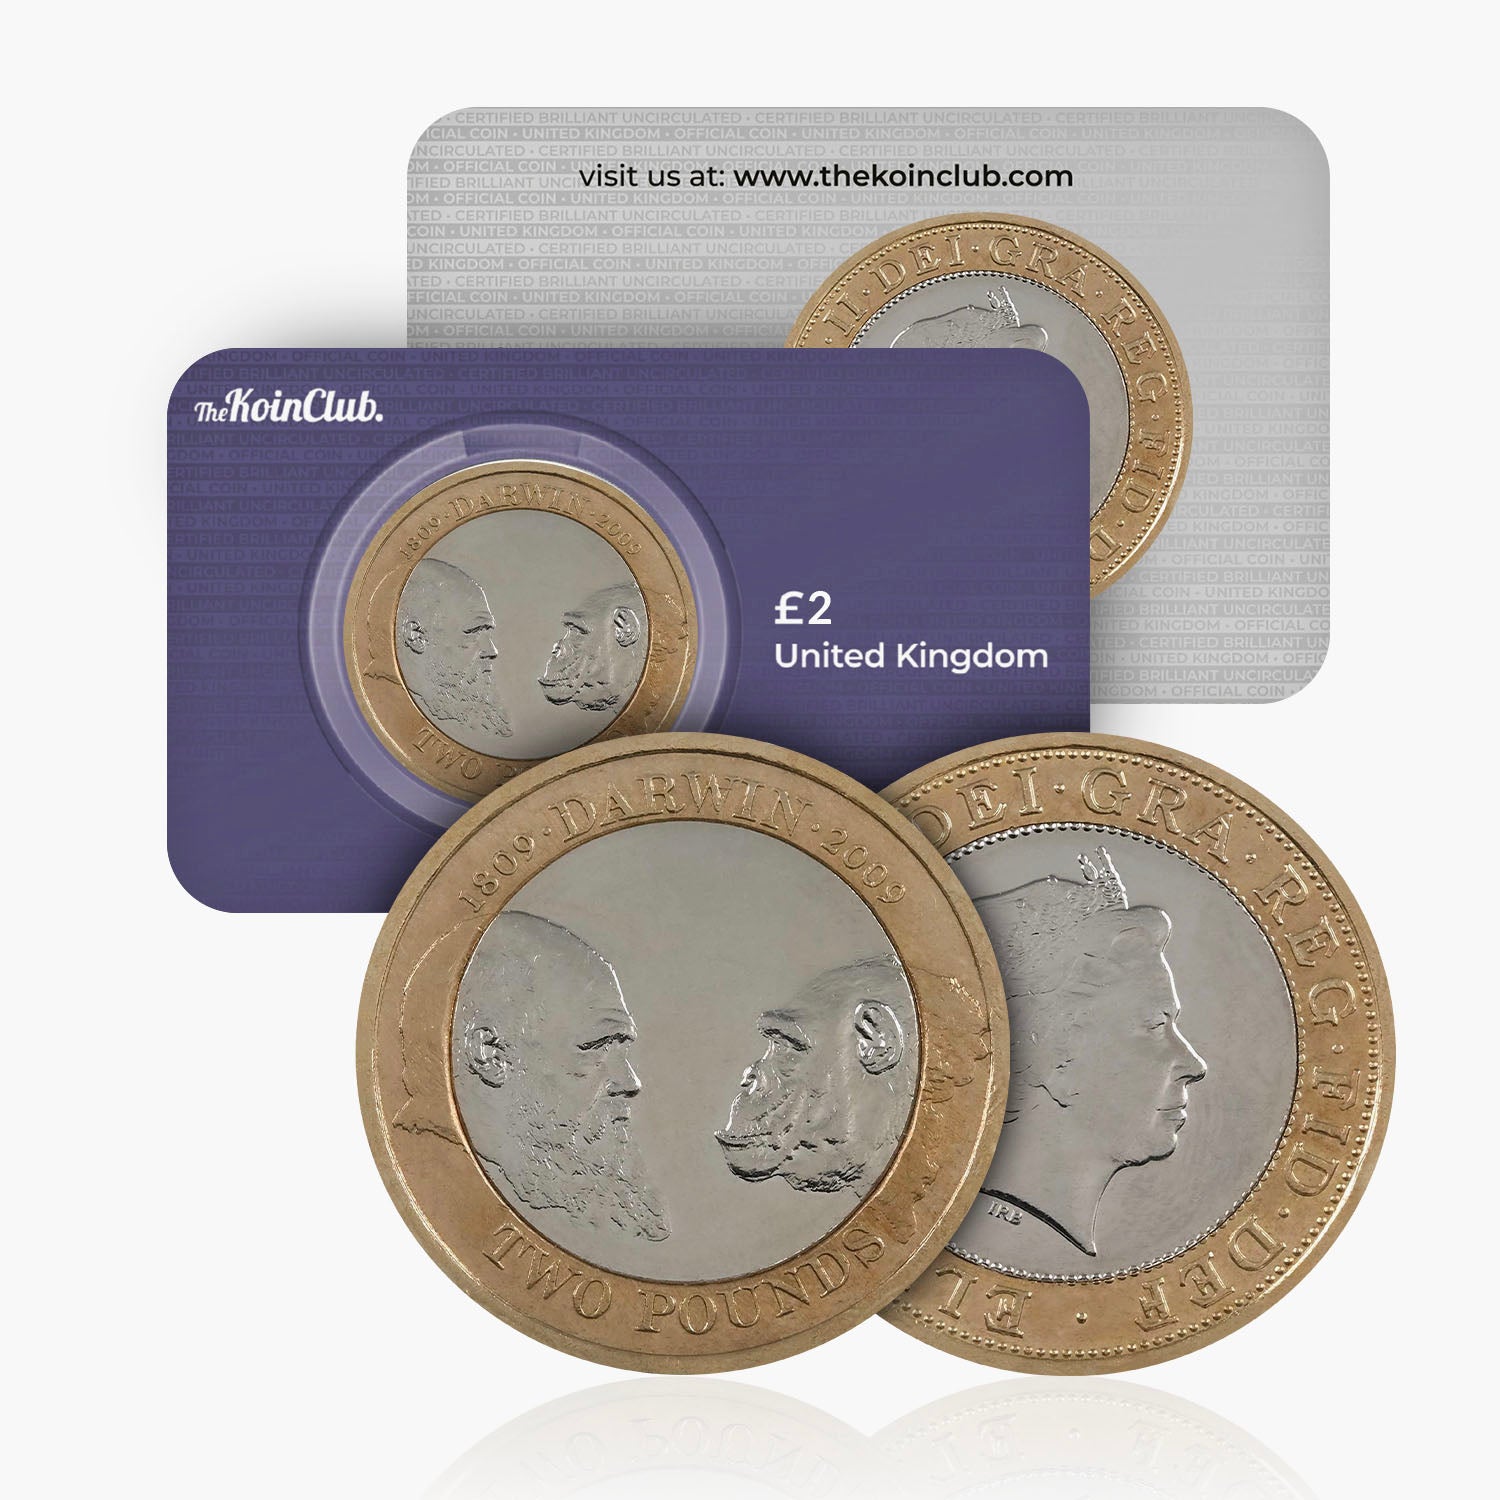 2009 Circulated Charles Darwin UK £2 Coin